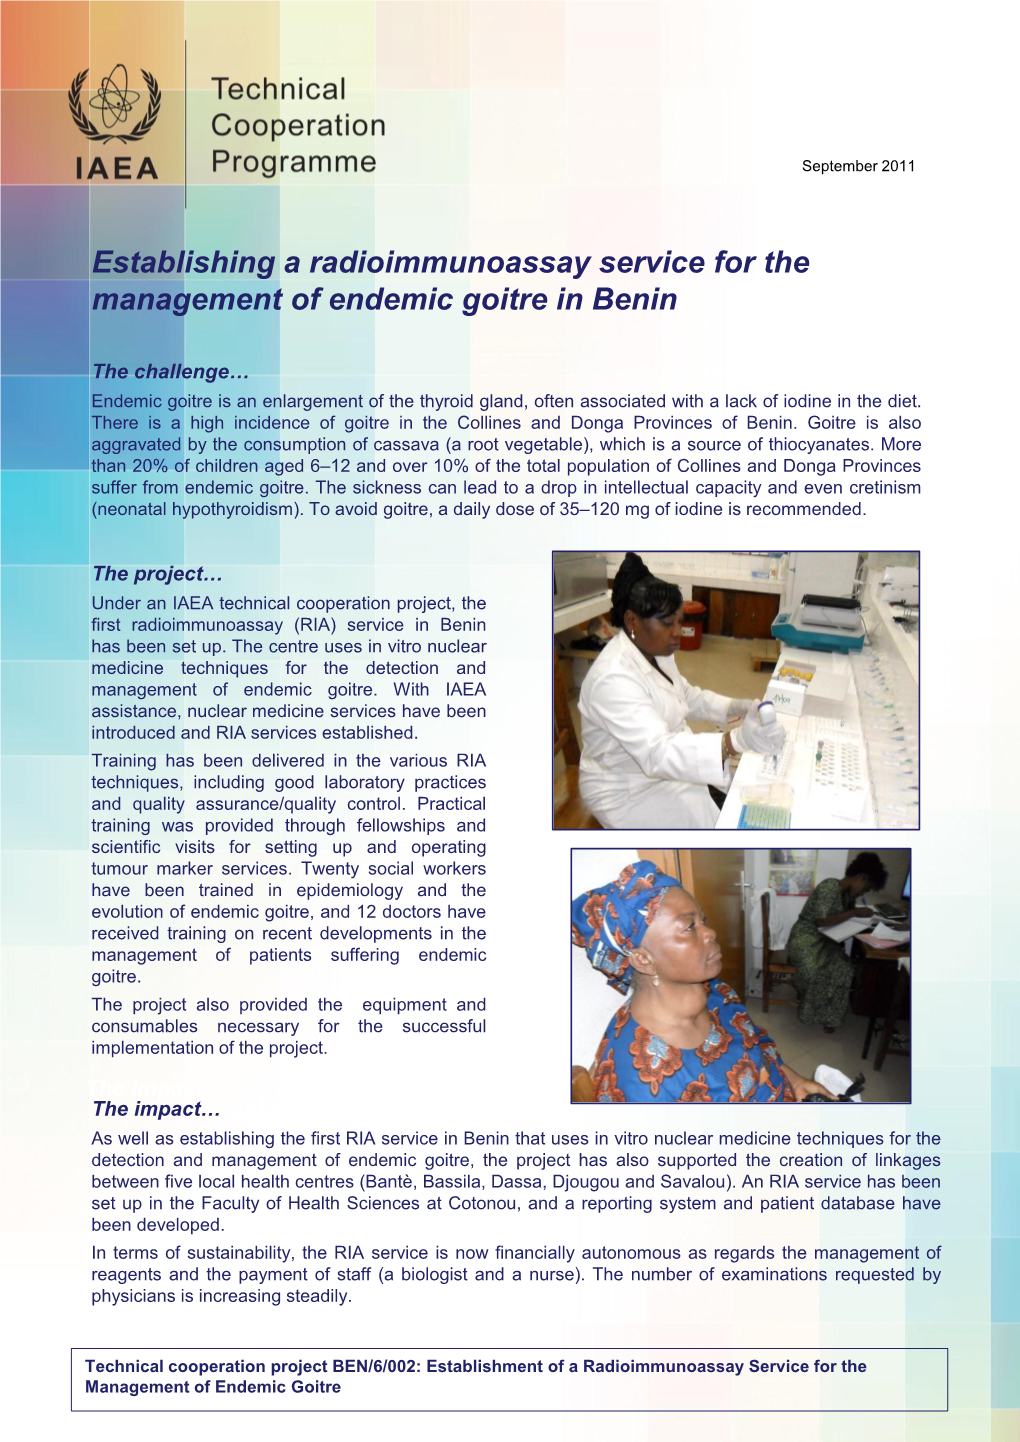 Establishing a Radioimmunoassay Service for the Management of Endemic Goitre in Benin